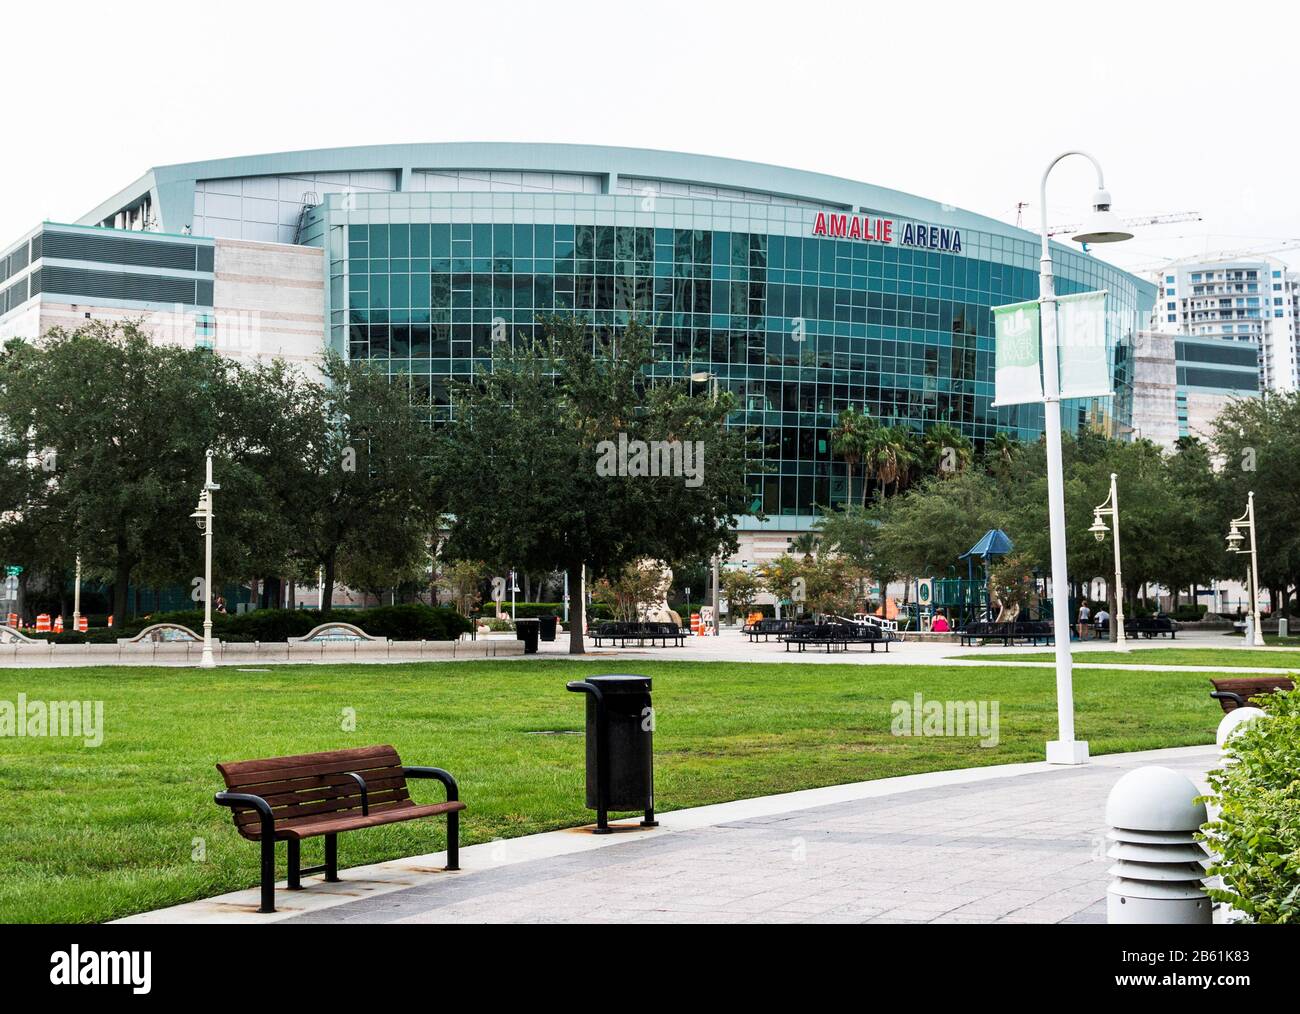 Tampa, Floride, États-Unis - 21 juillet 2018 : vue sur la Tampa'a Amale Arena depuis le parc en face de l'arène. Banque D'Images